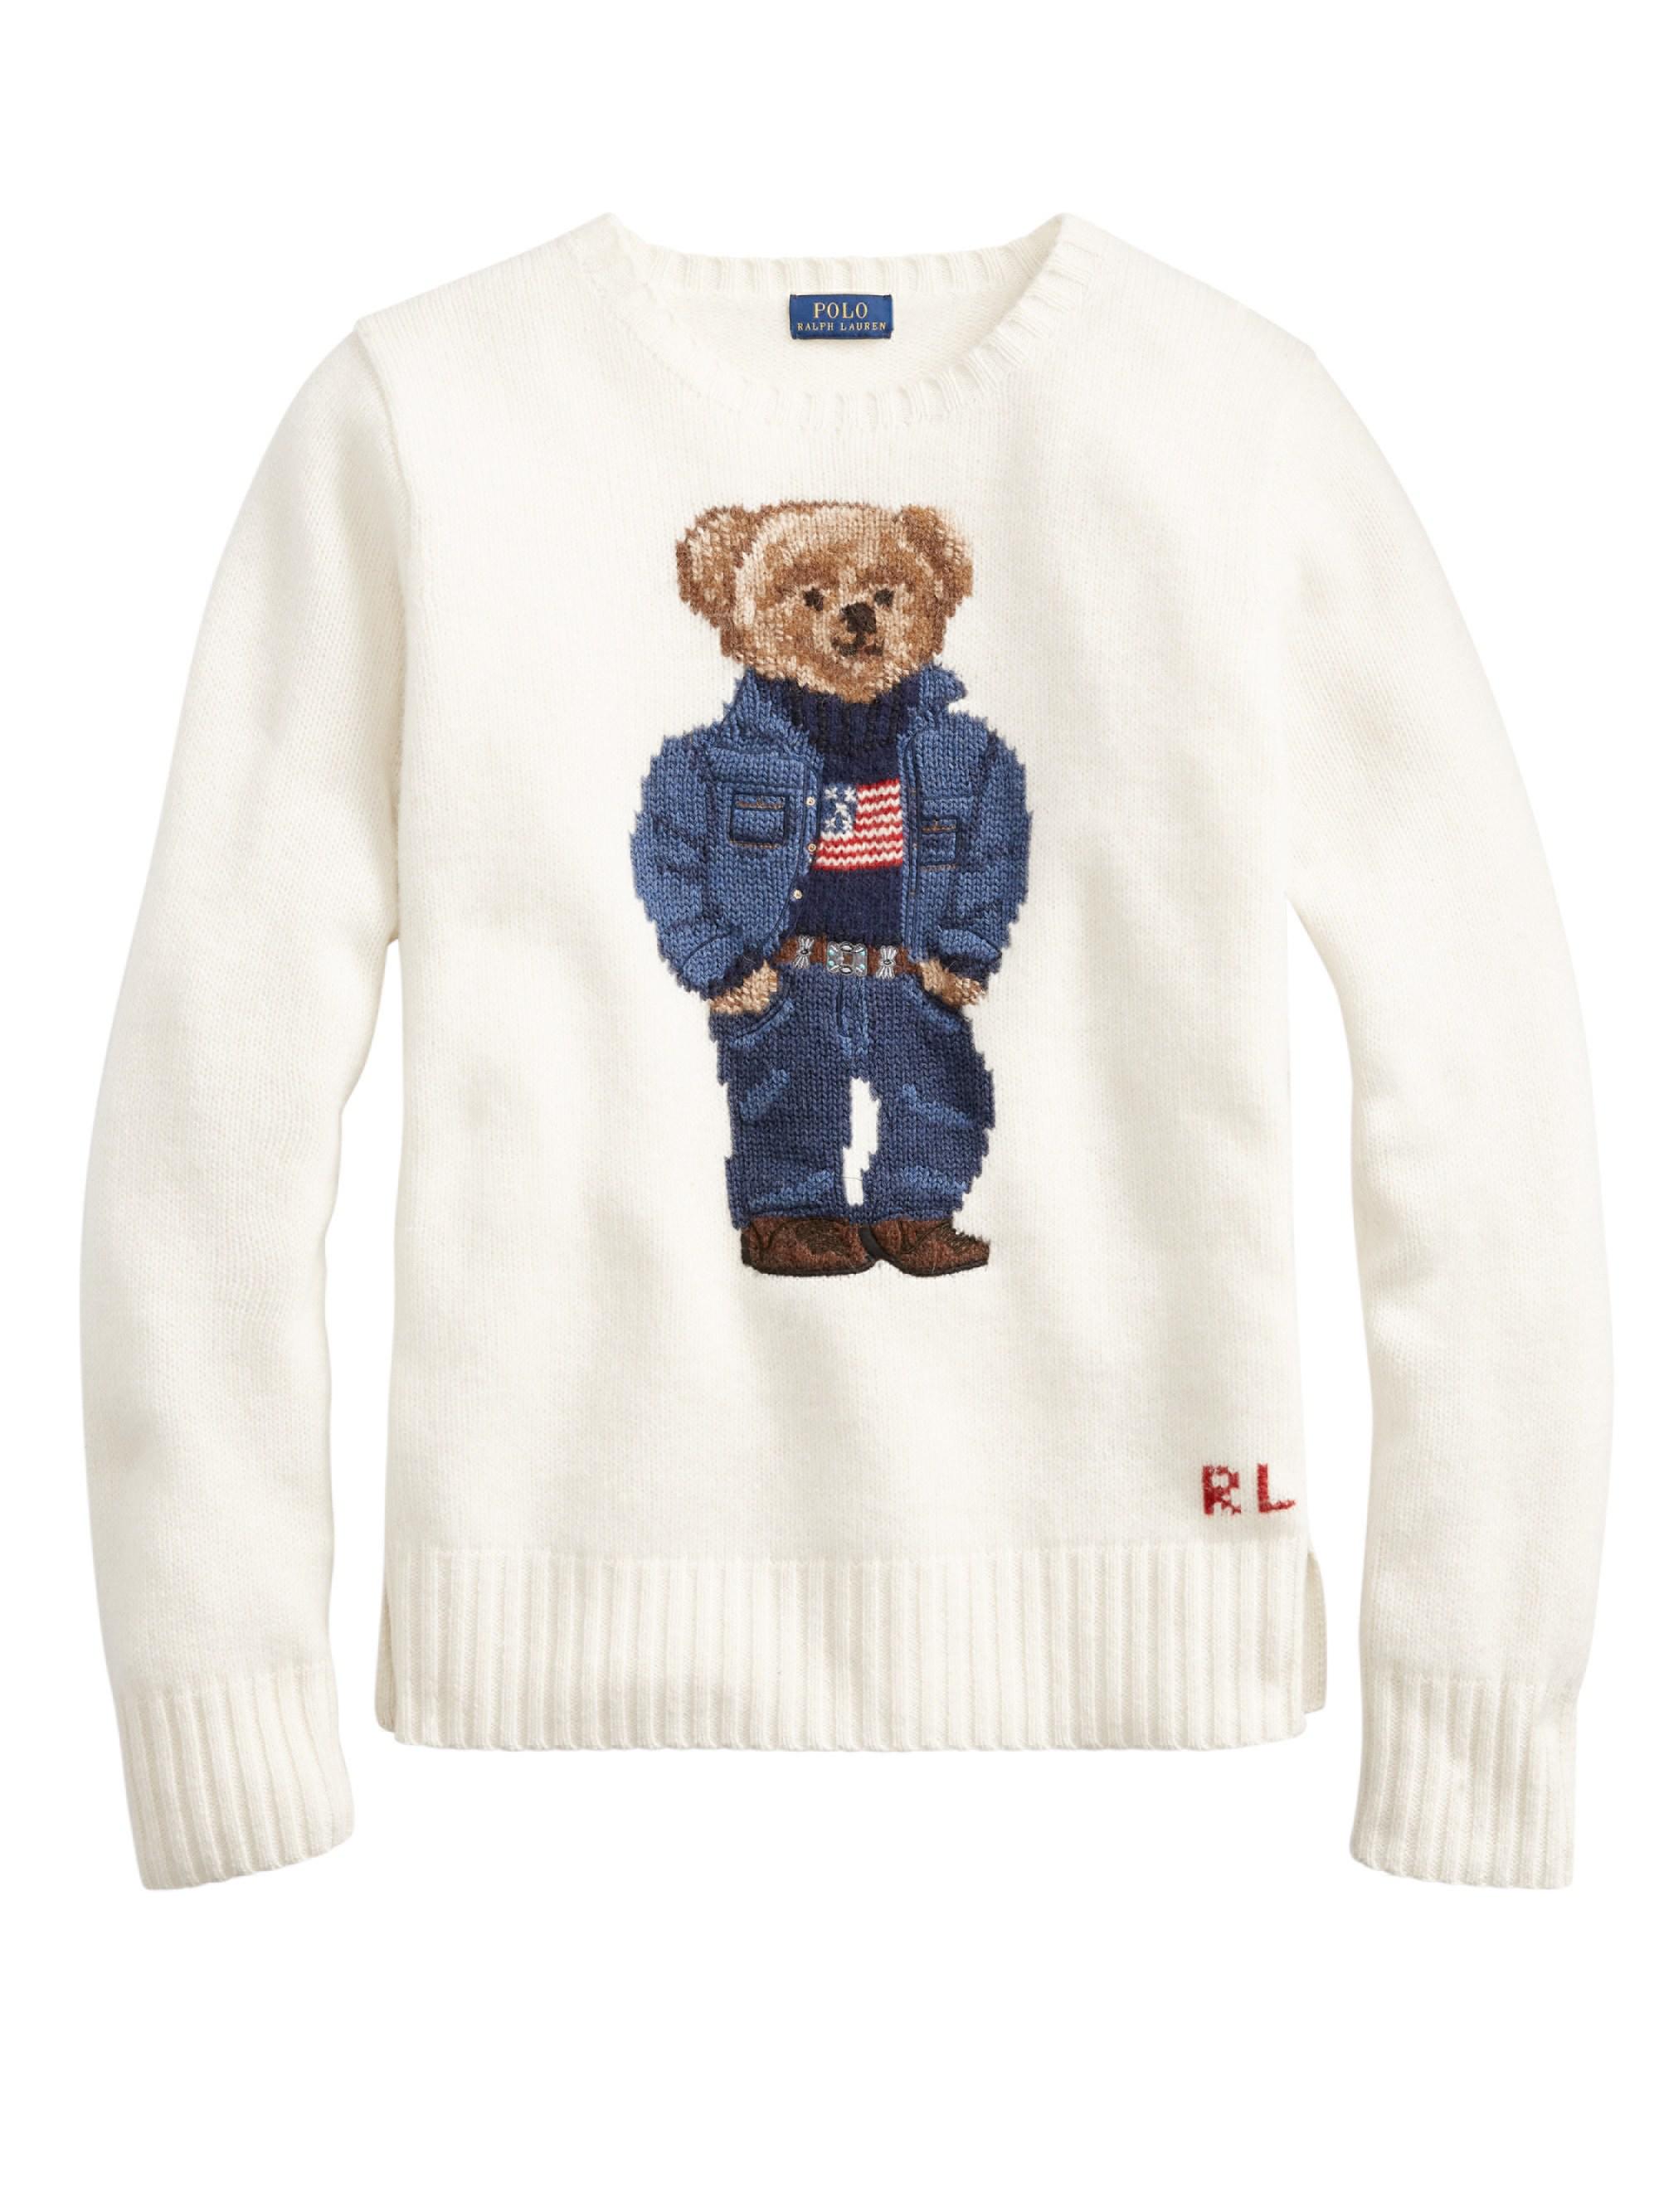 women's polo teddy bear sweater